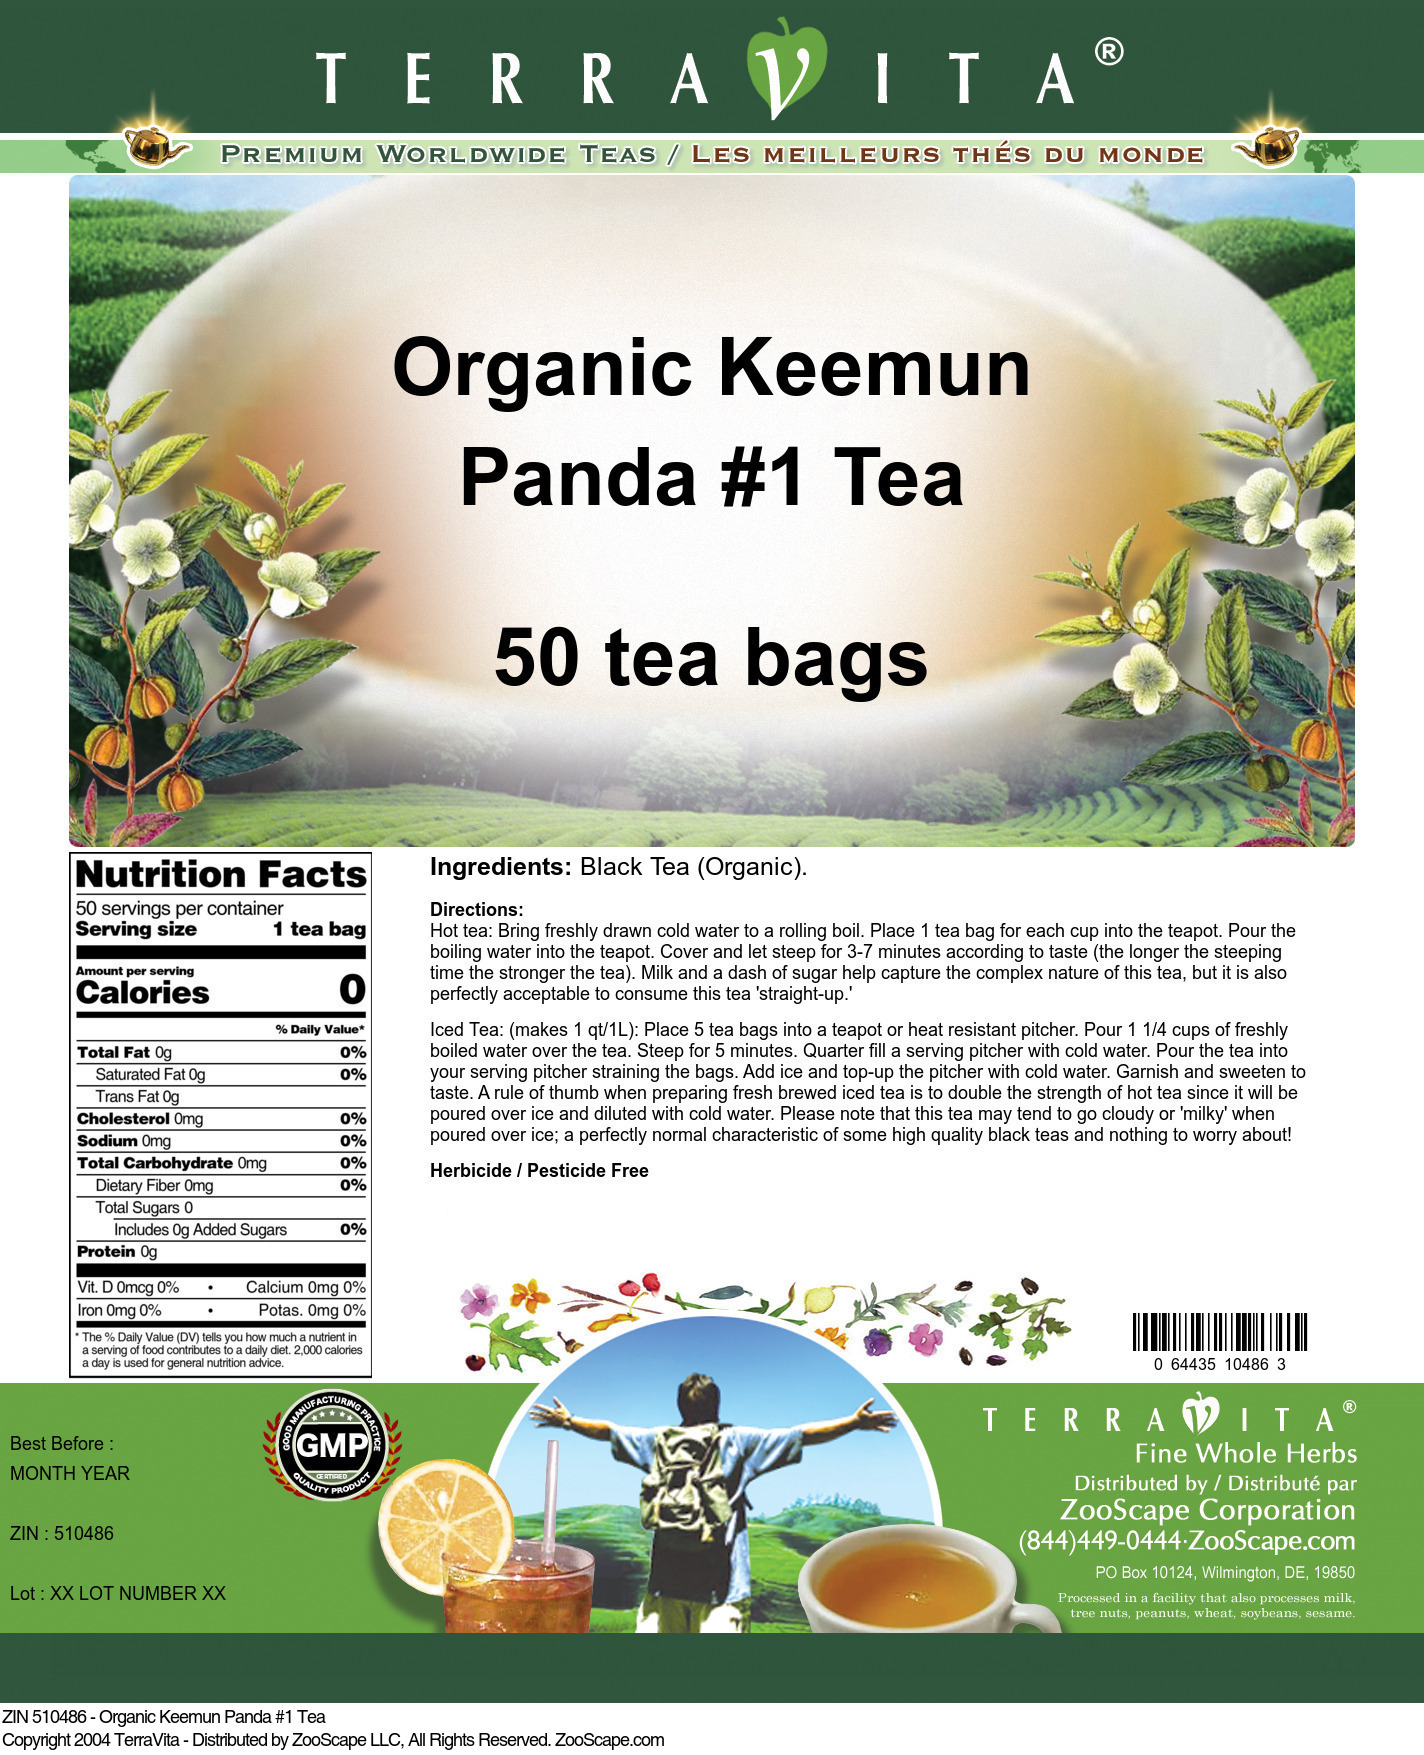 Organic Keemun Panda #1 Tea - Label